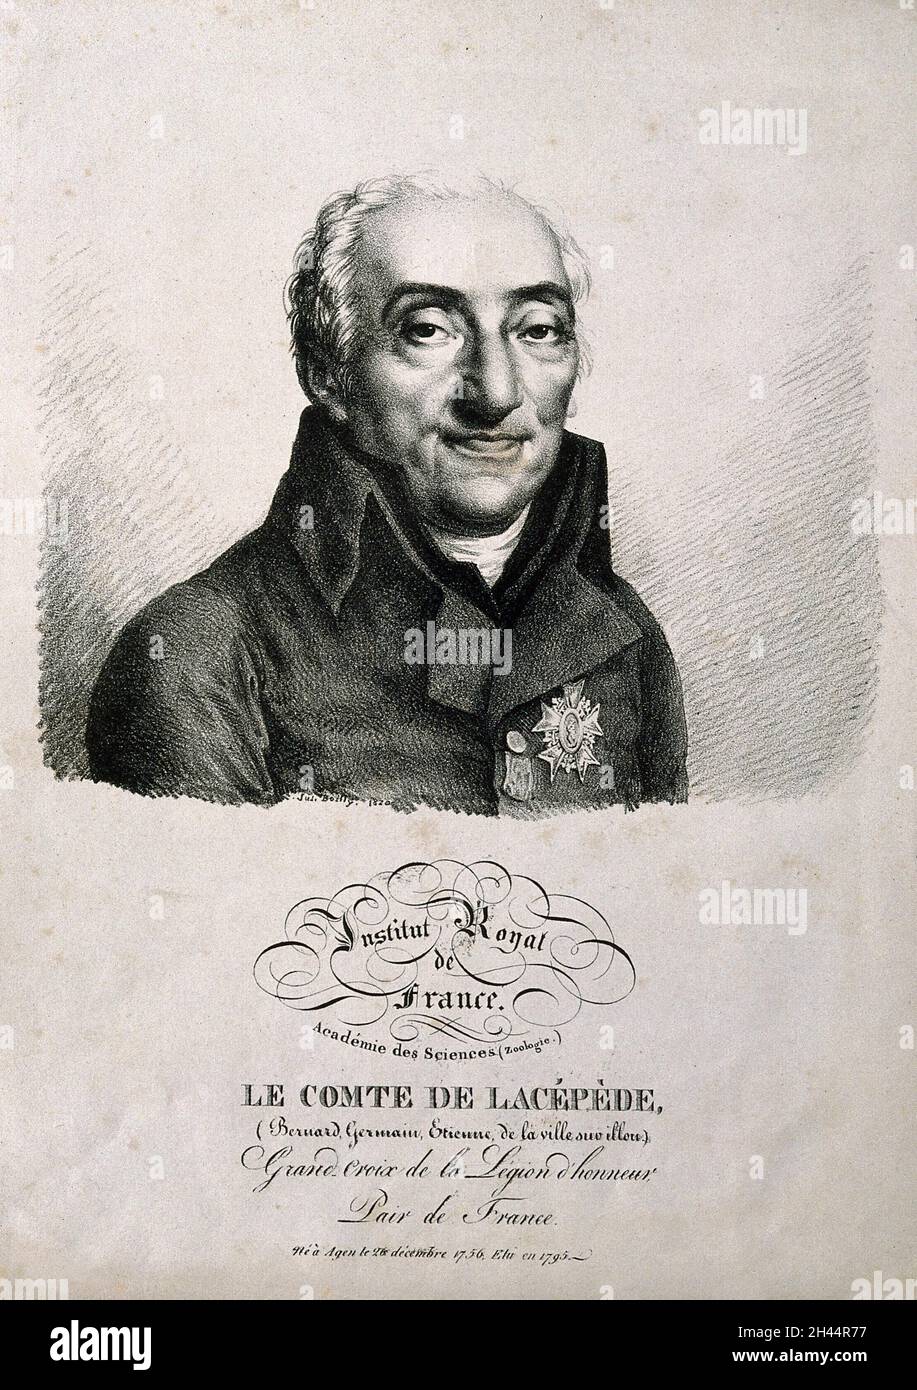 Bernard Germain Étienne de la Ville-sur-Illon, Comte de Lacépède. Litografía de J. Boilly, 1820. Foto de stock